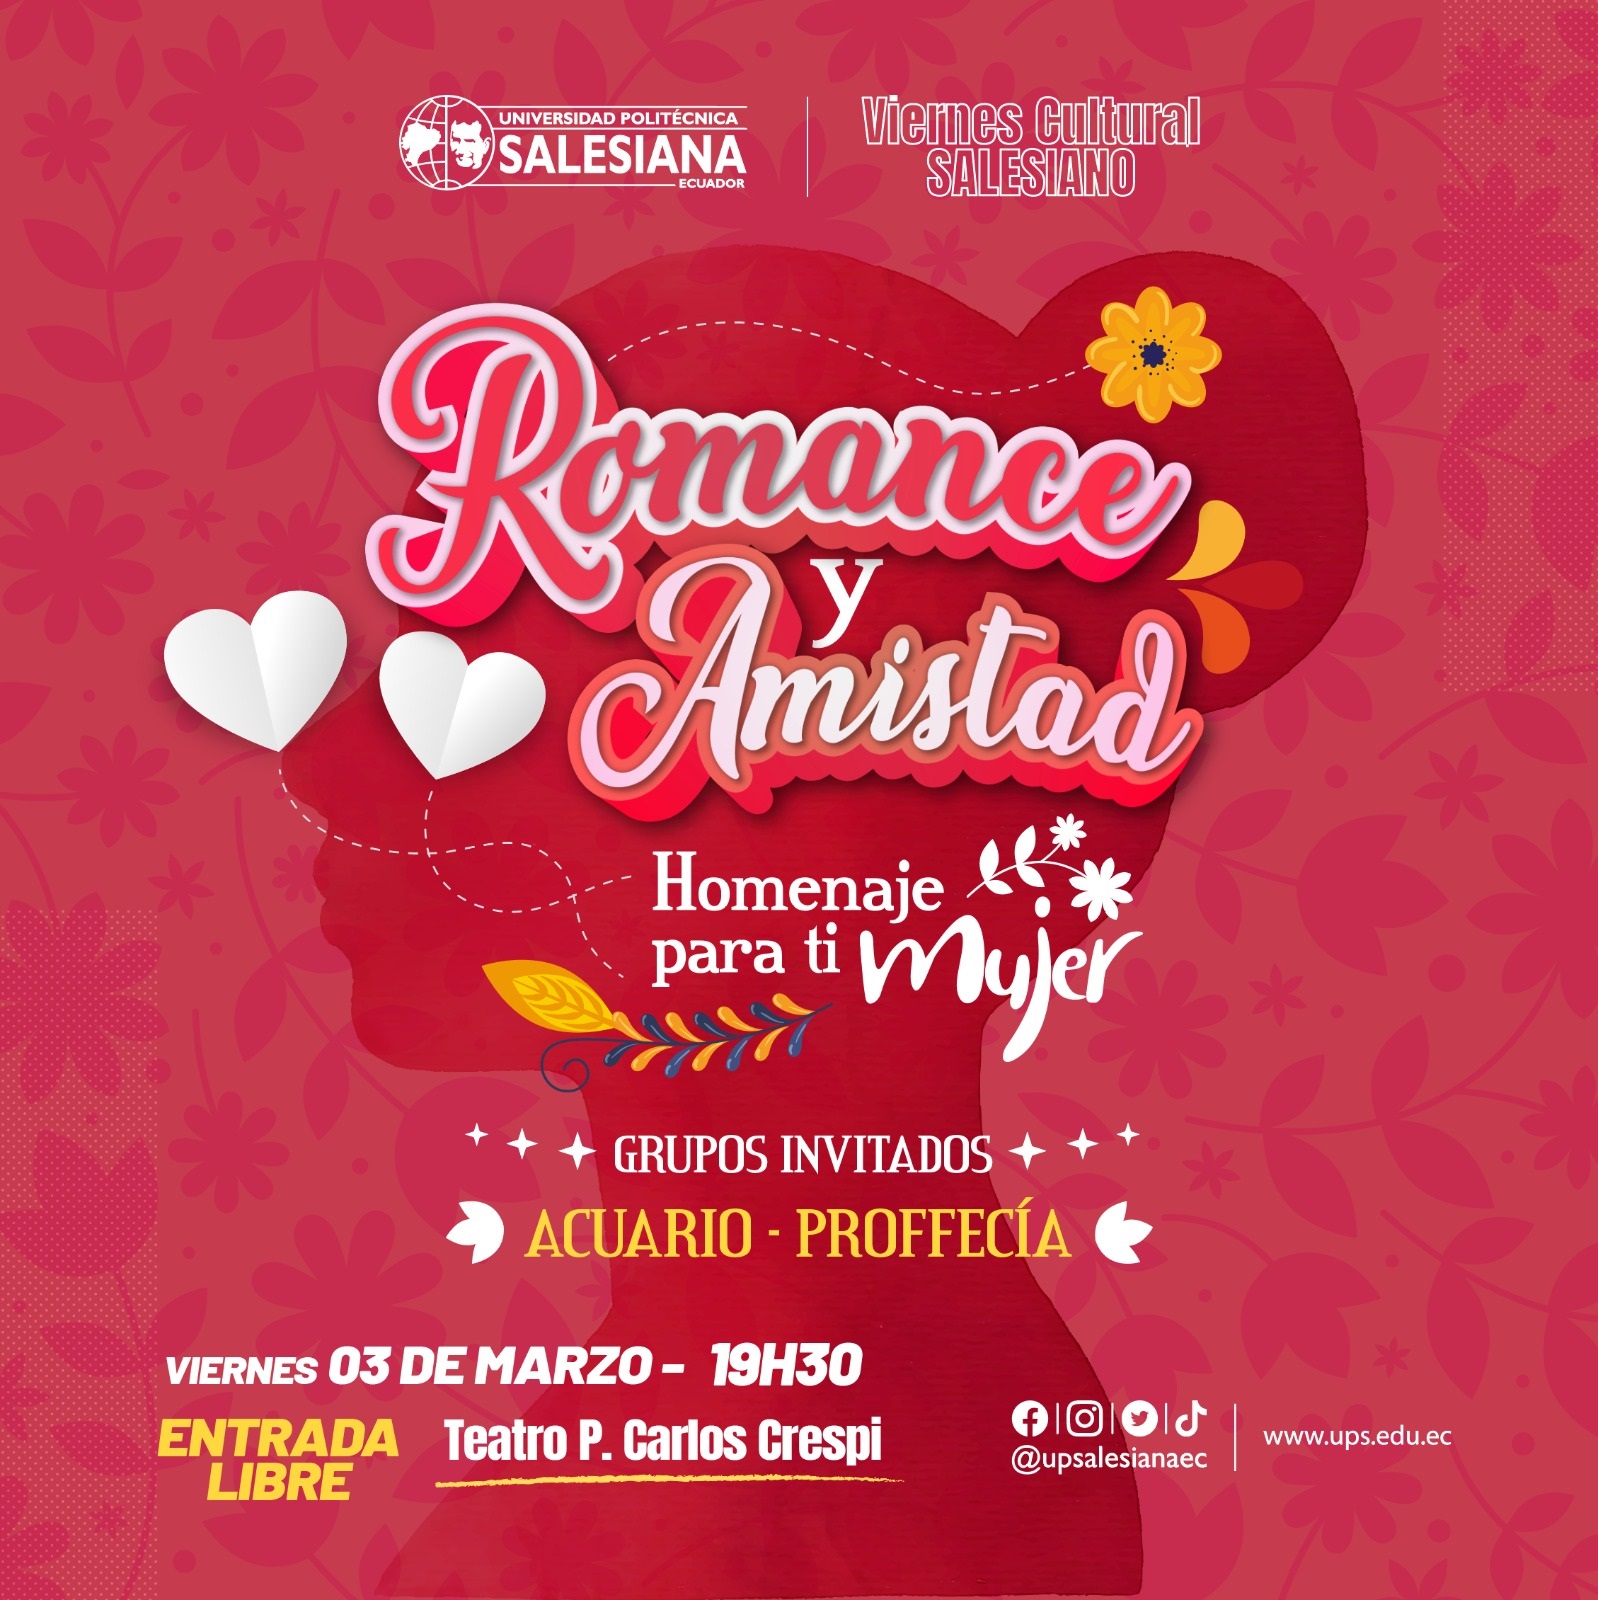 Afiche promocional del Viernes Cultural Salesiano - Romance y amistad: Un homenaje para ti mujer